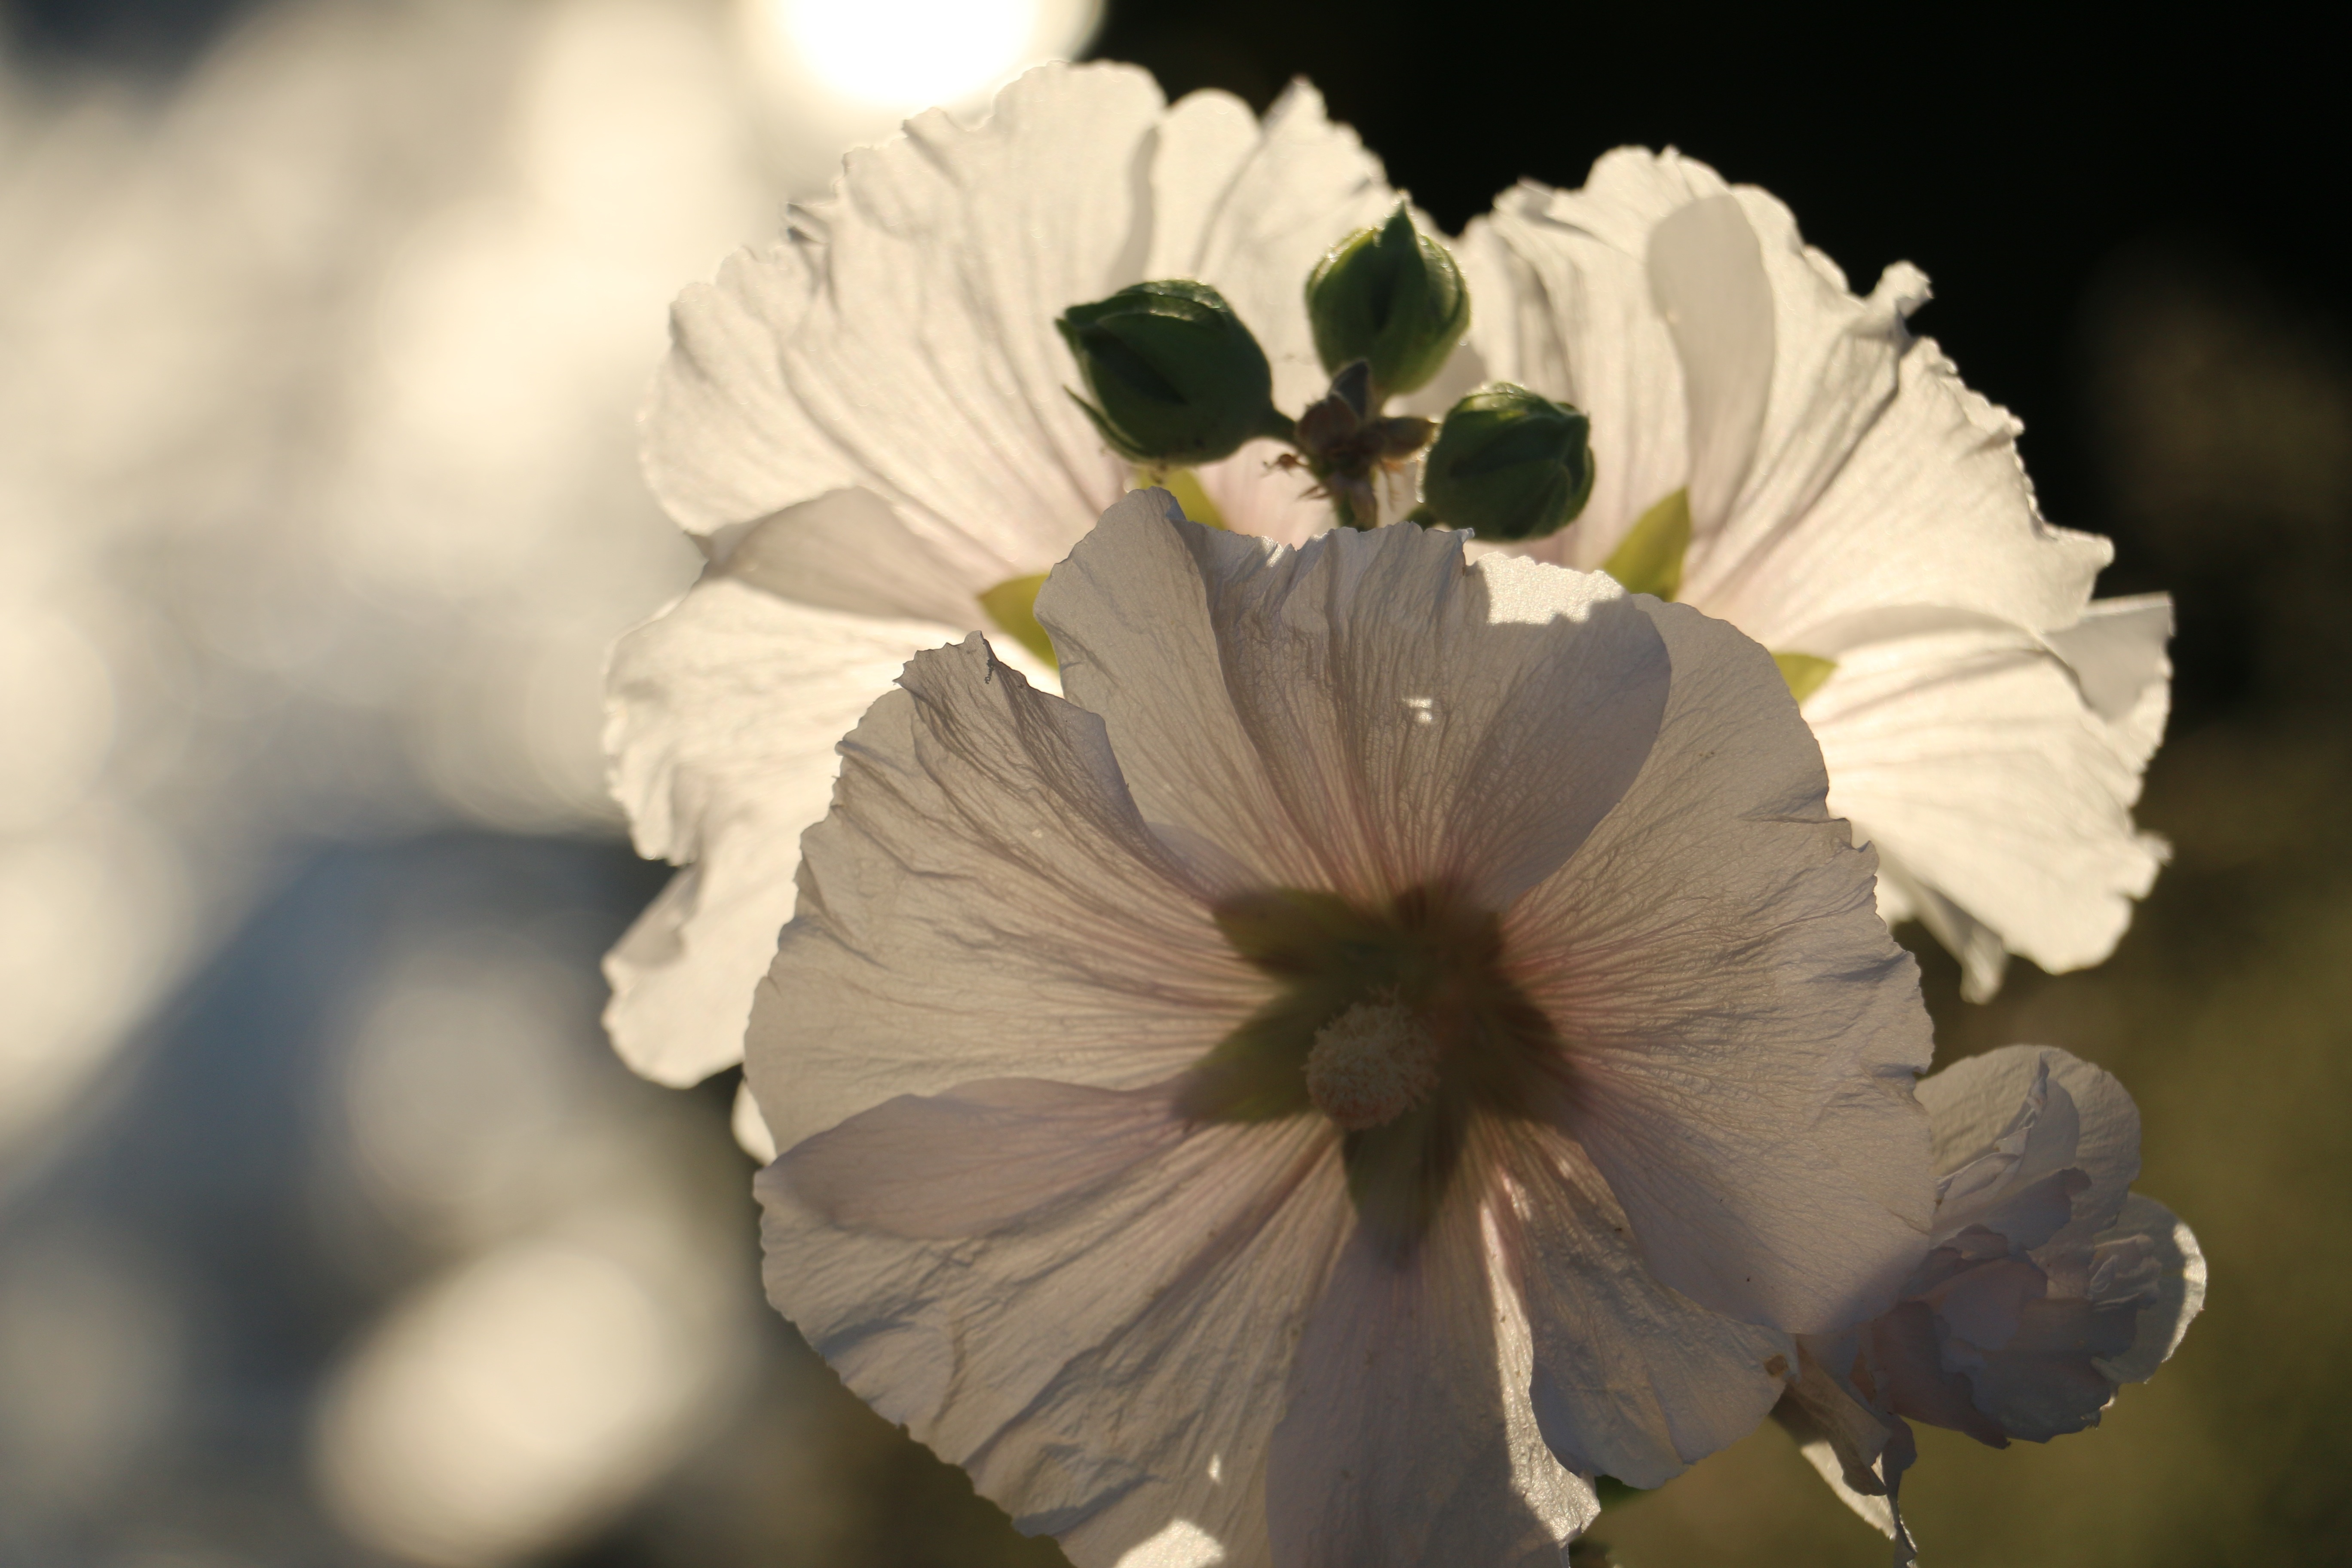 white flower plant